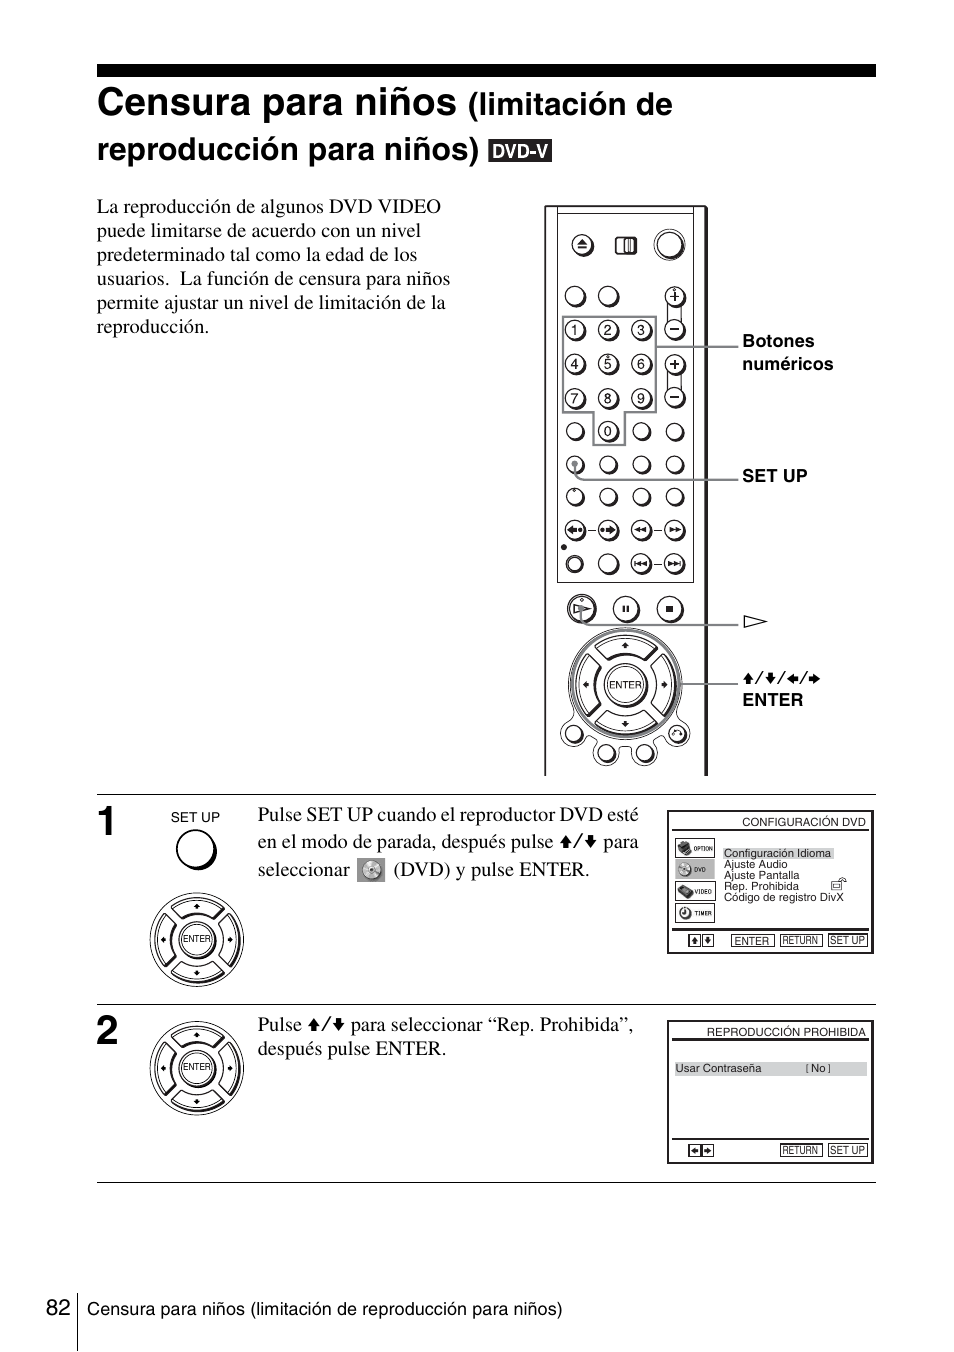 82 c, Censura para niños, Limitación de reproducción para niños) | Sony SLV-D980PD Manual del usuario | Página 82 / 156